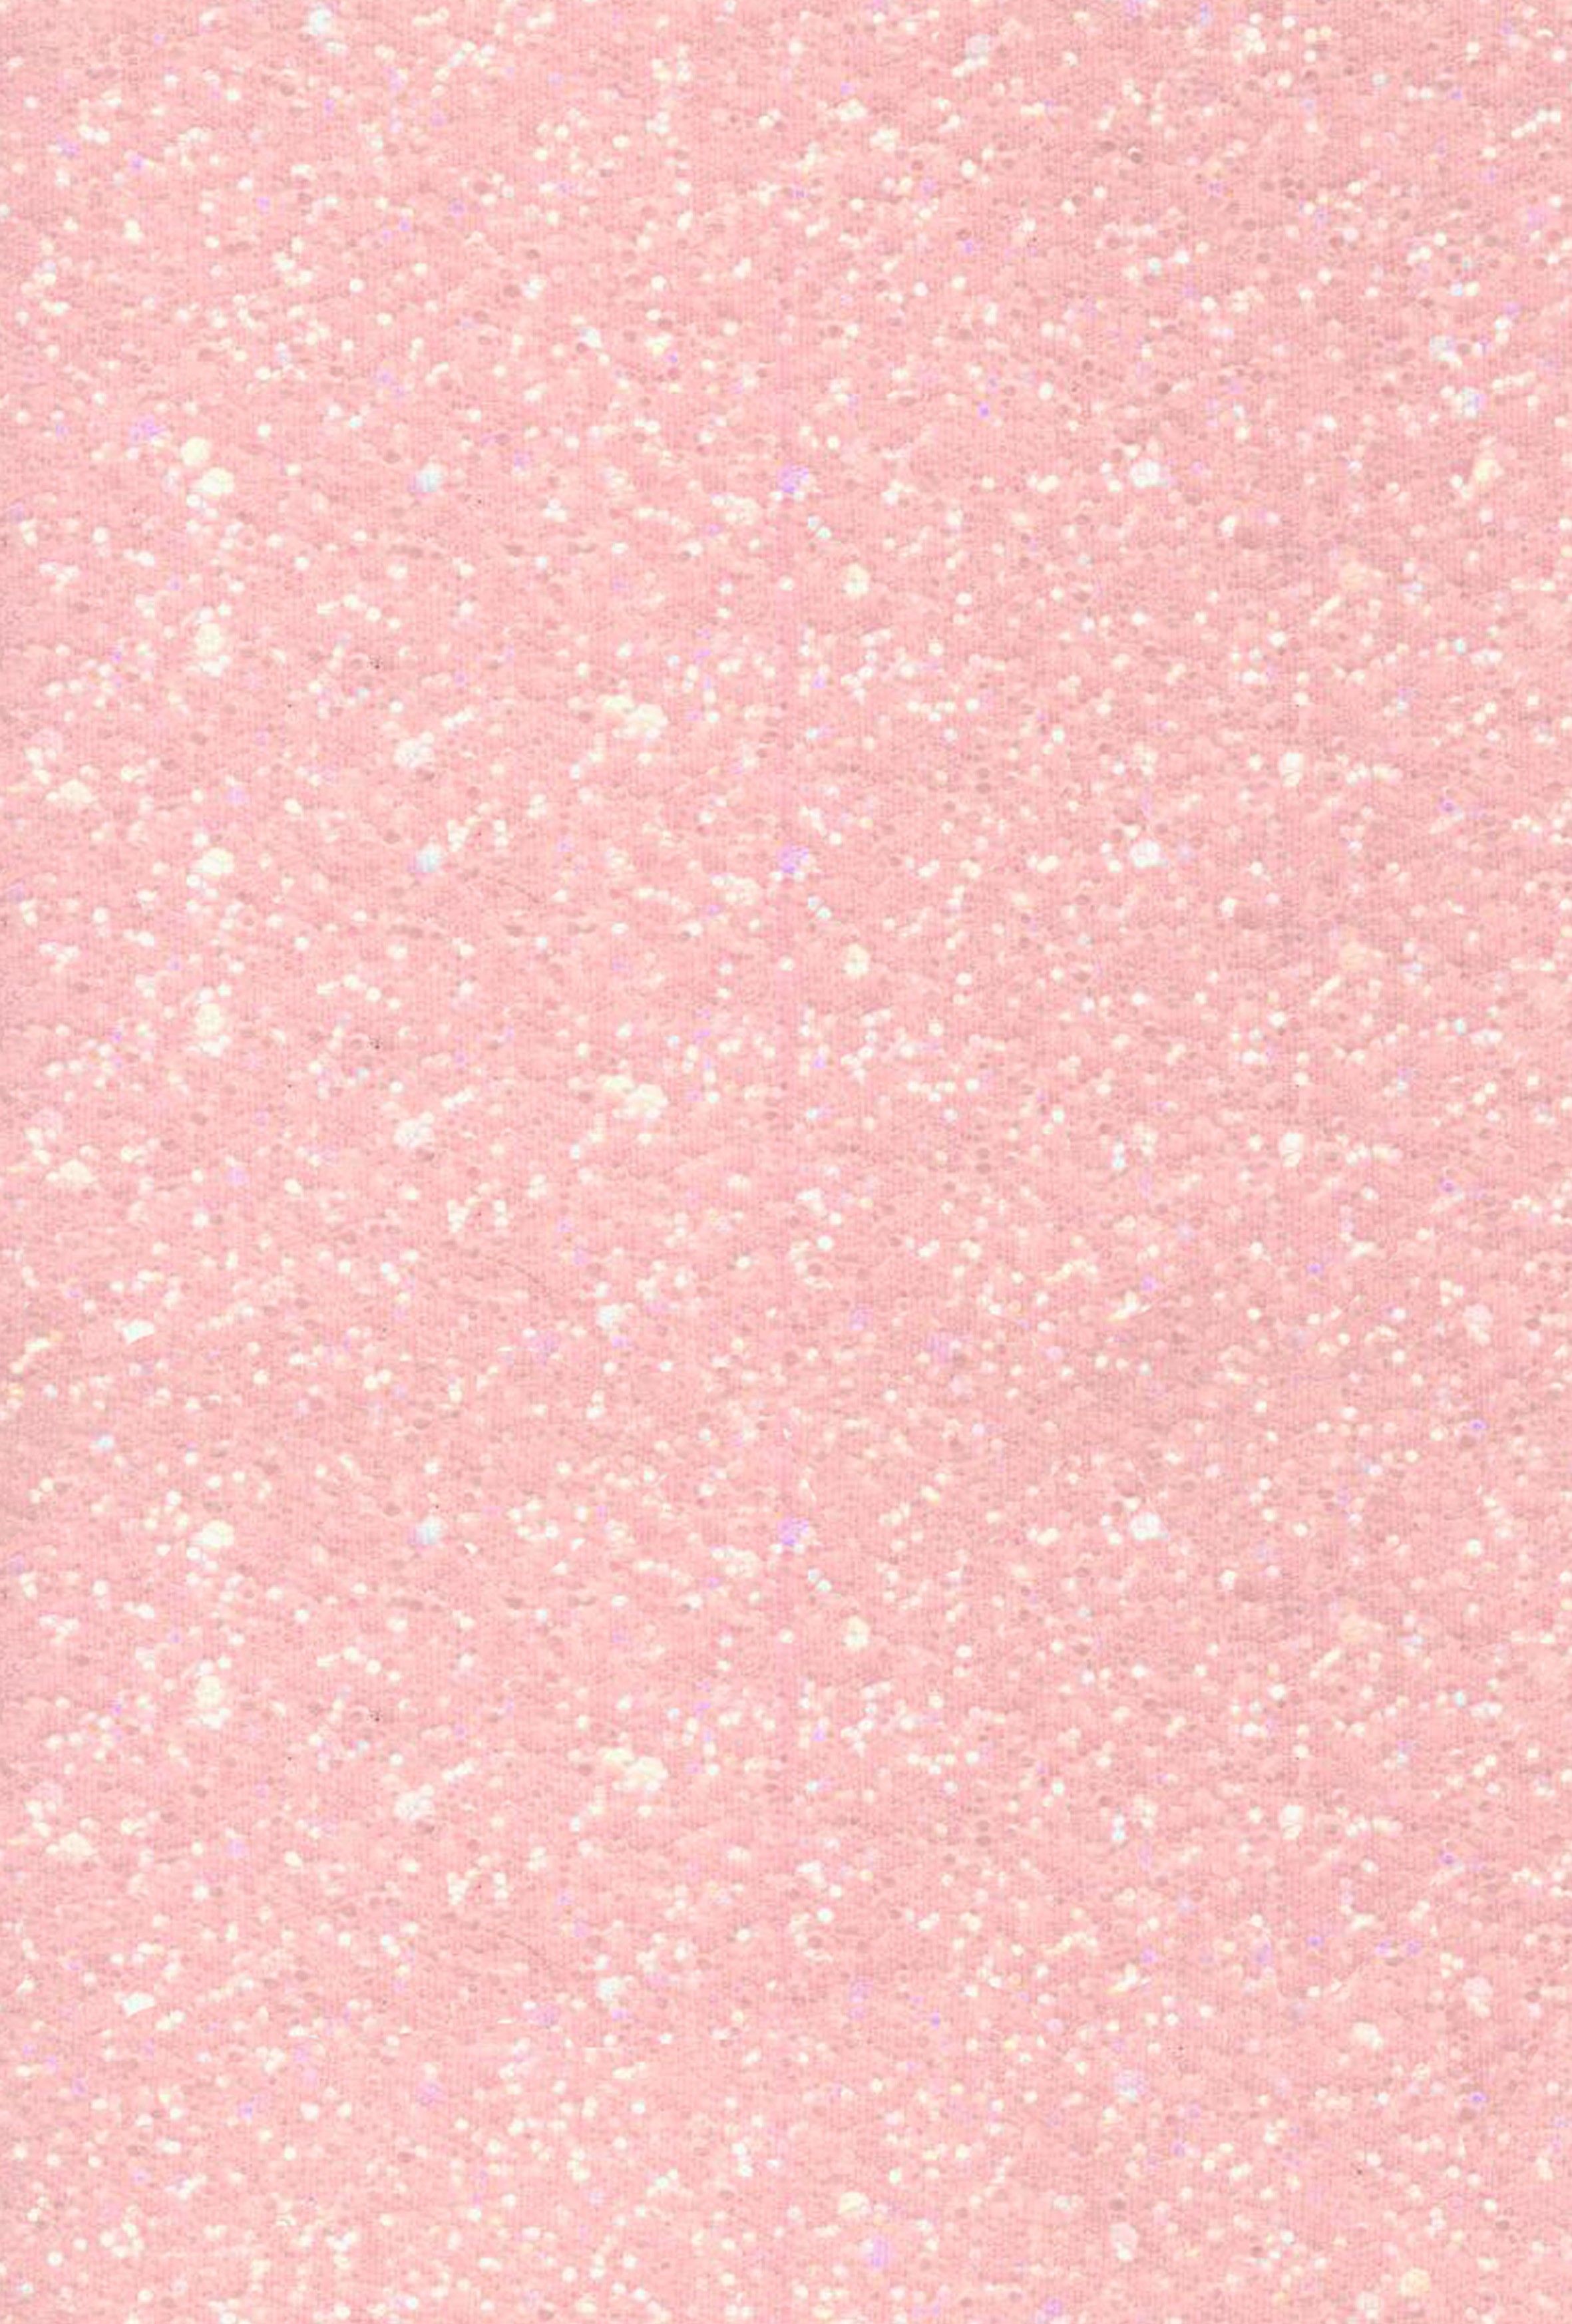 Pink Ombre Glitter Wallpaper